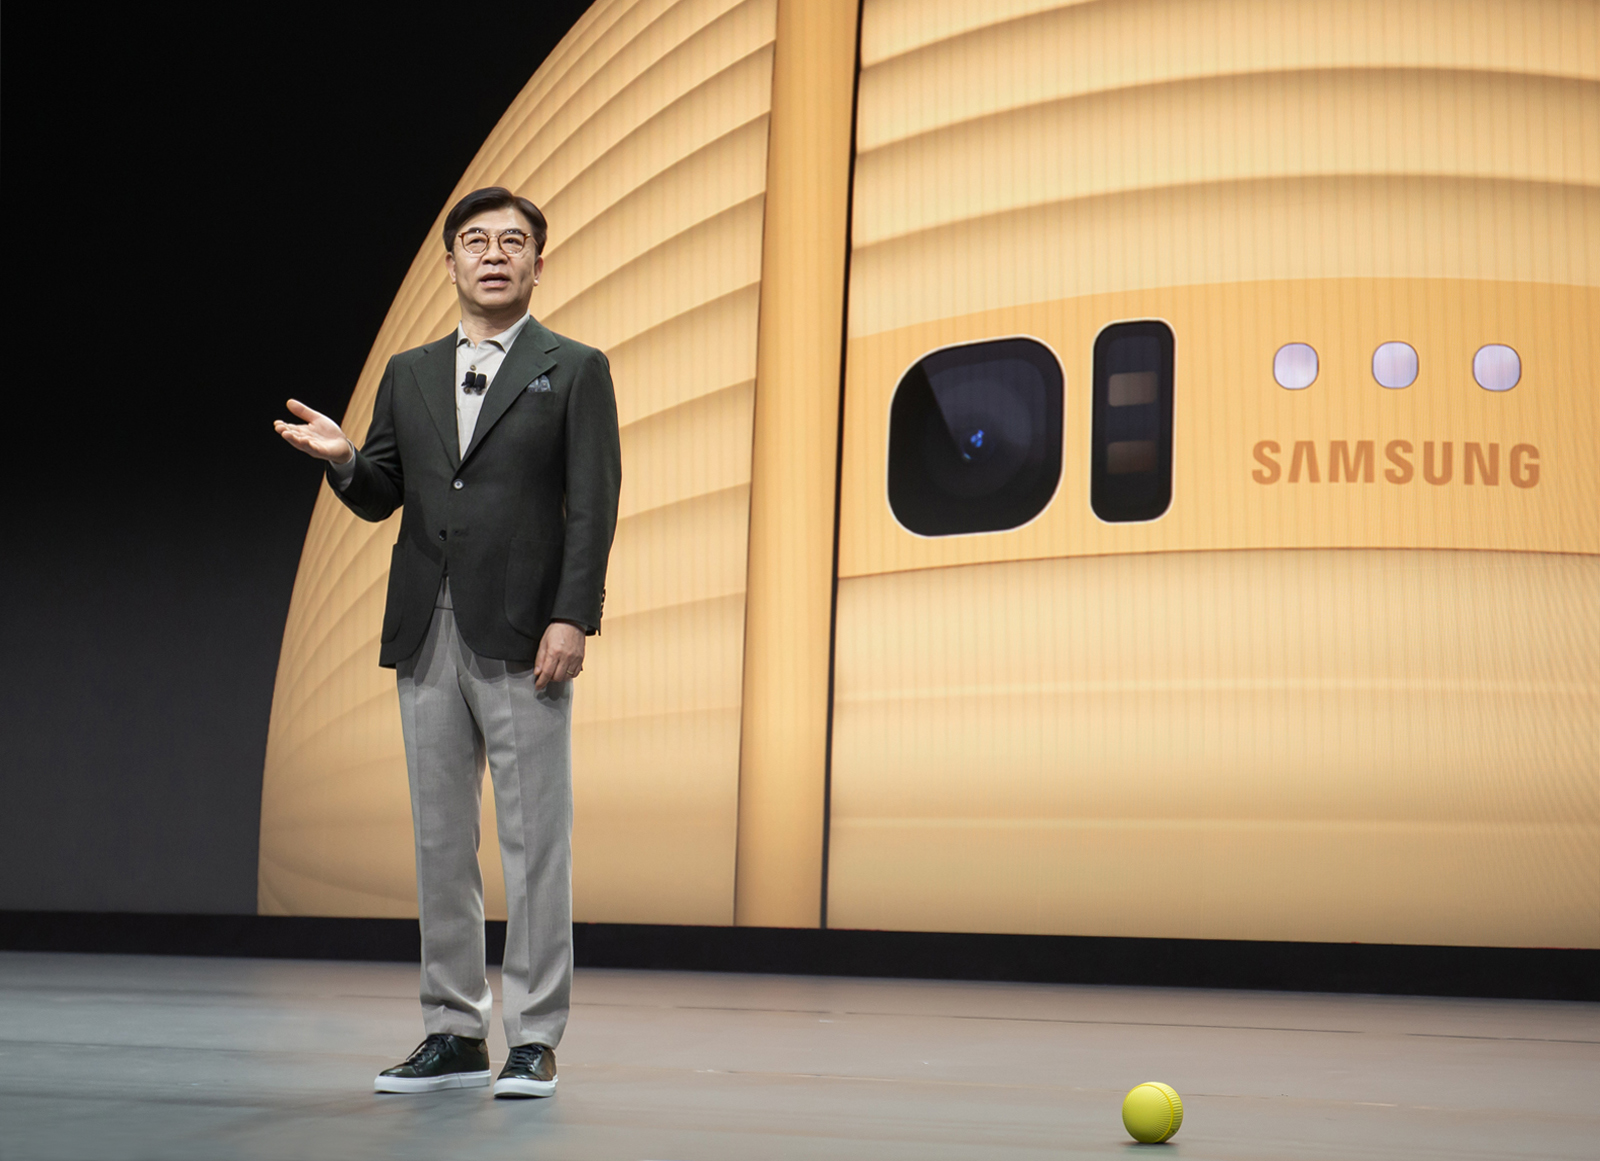 Samsung's HS.Kim Keynote at CES 2020